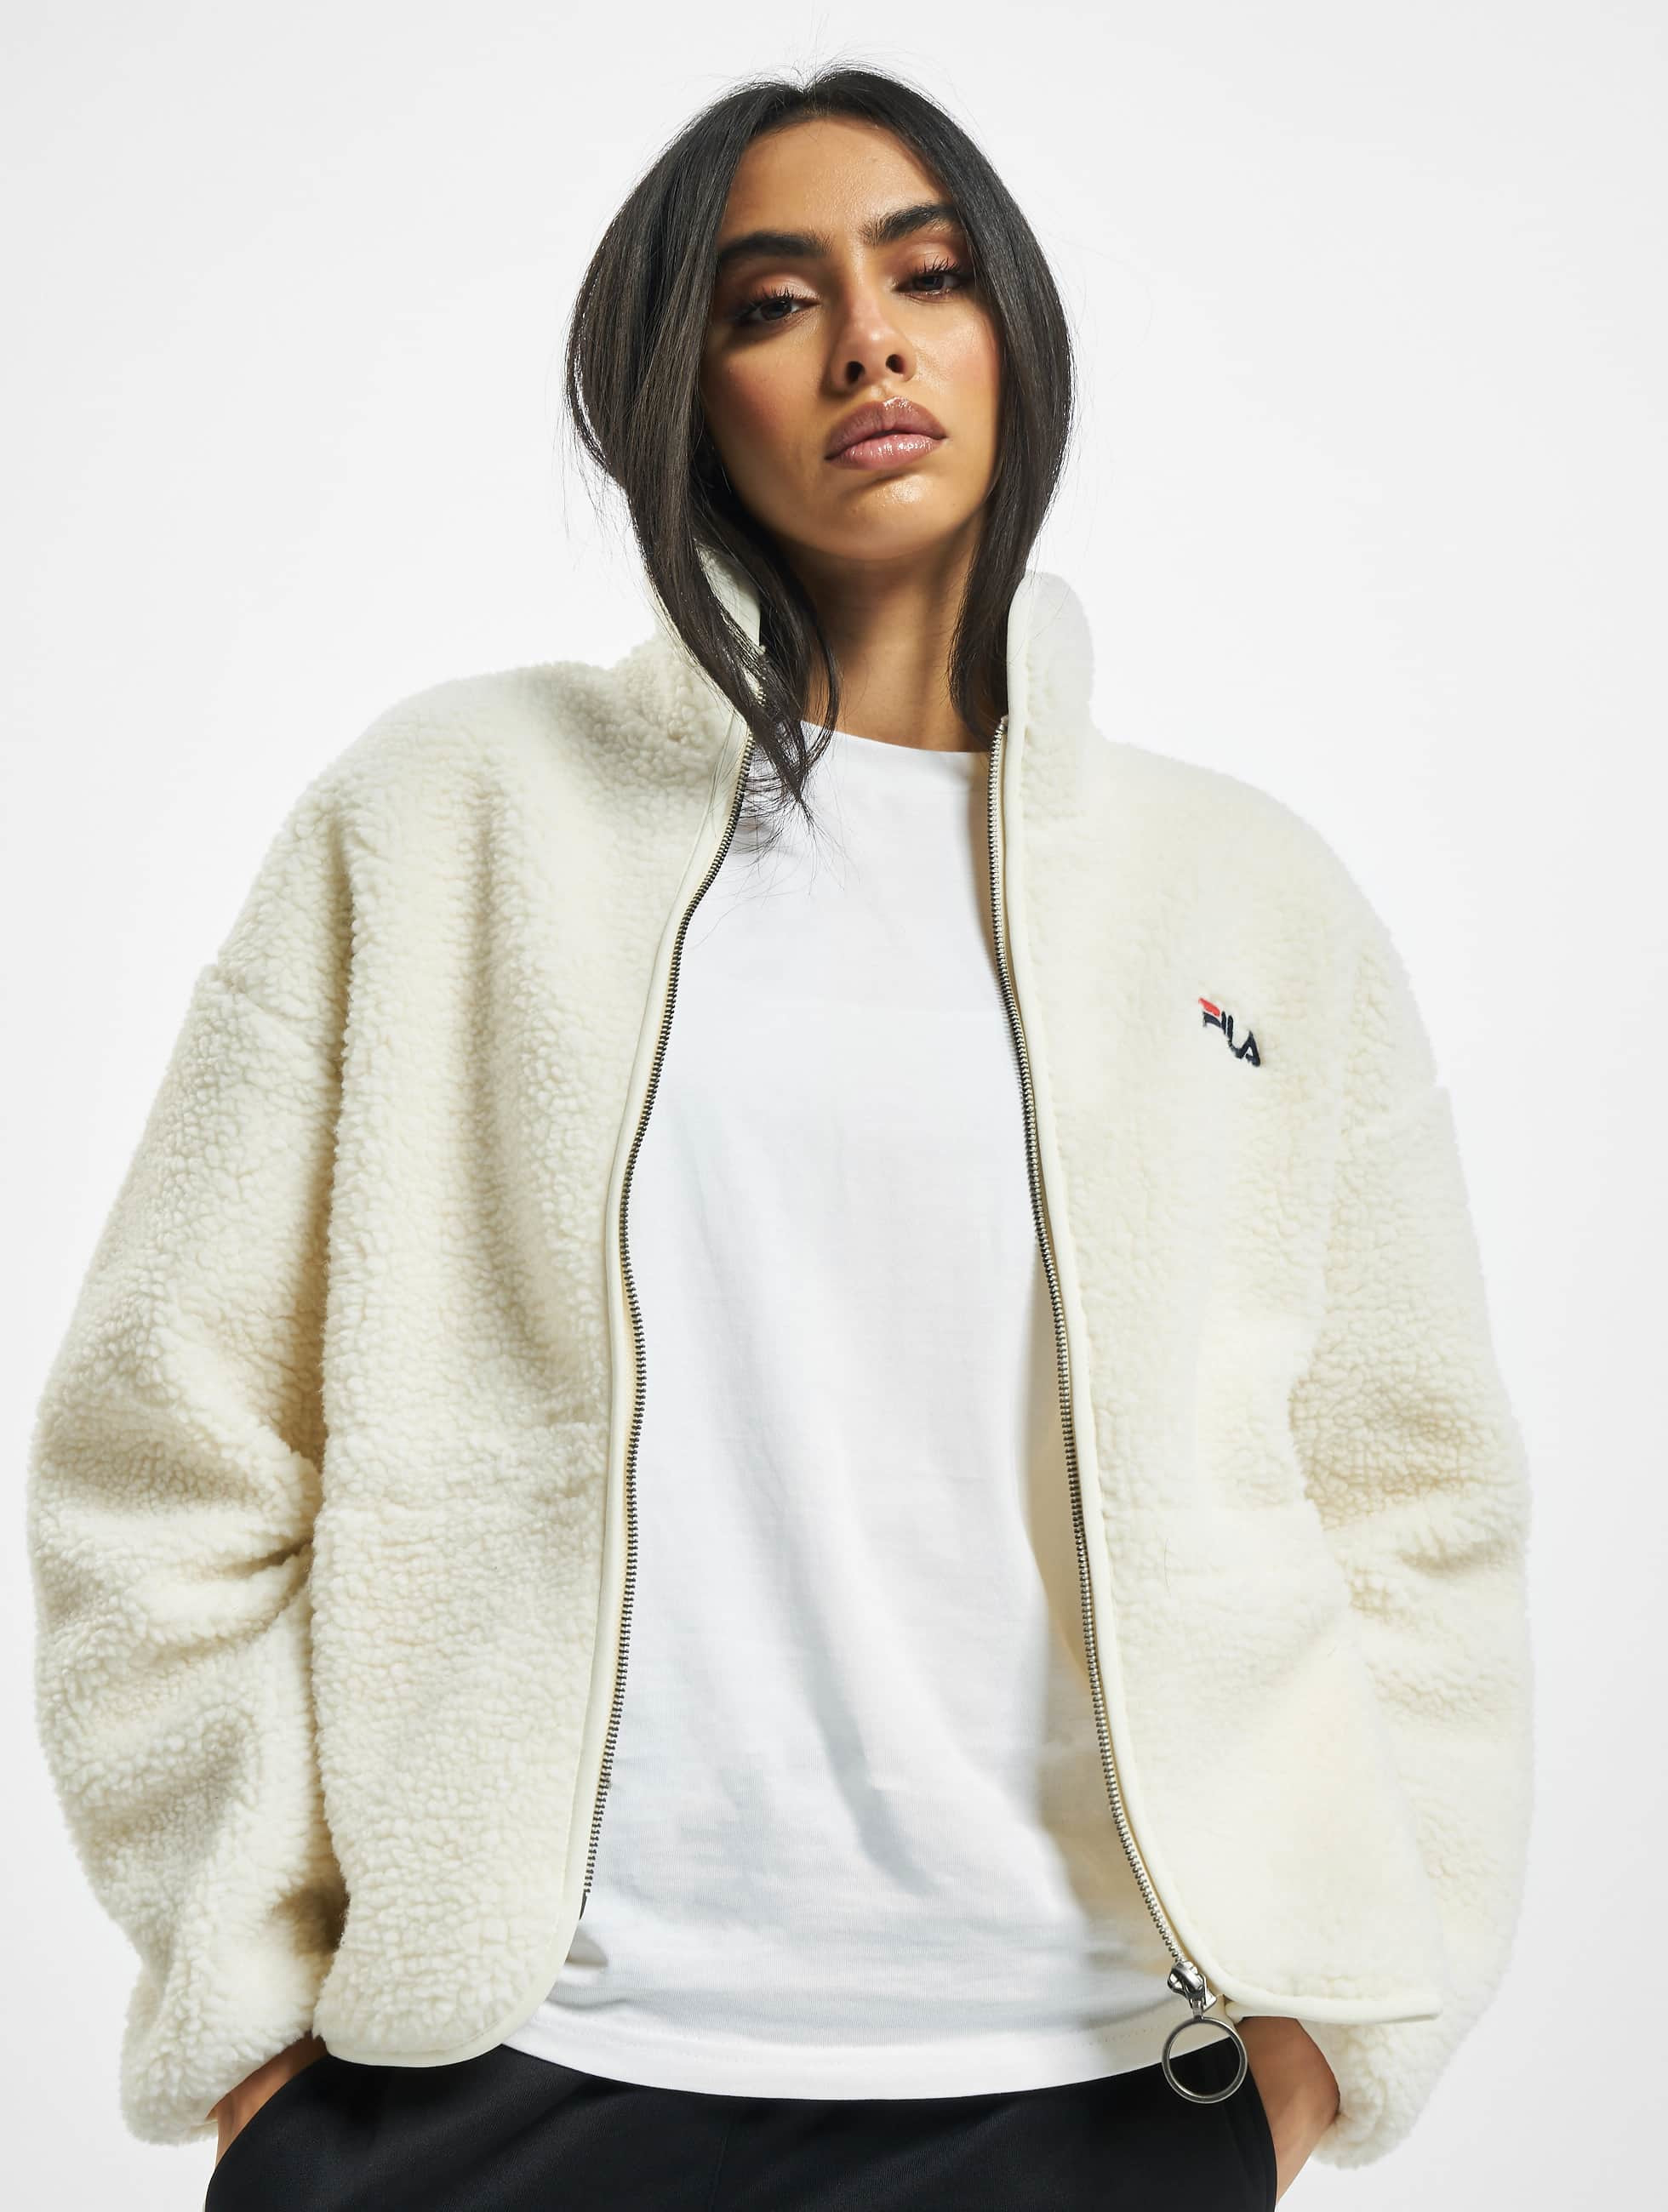 vleet adelaar Appartement FILA jas / Zomerjas Bianco Sari Sherpa Fleece in wit 777767